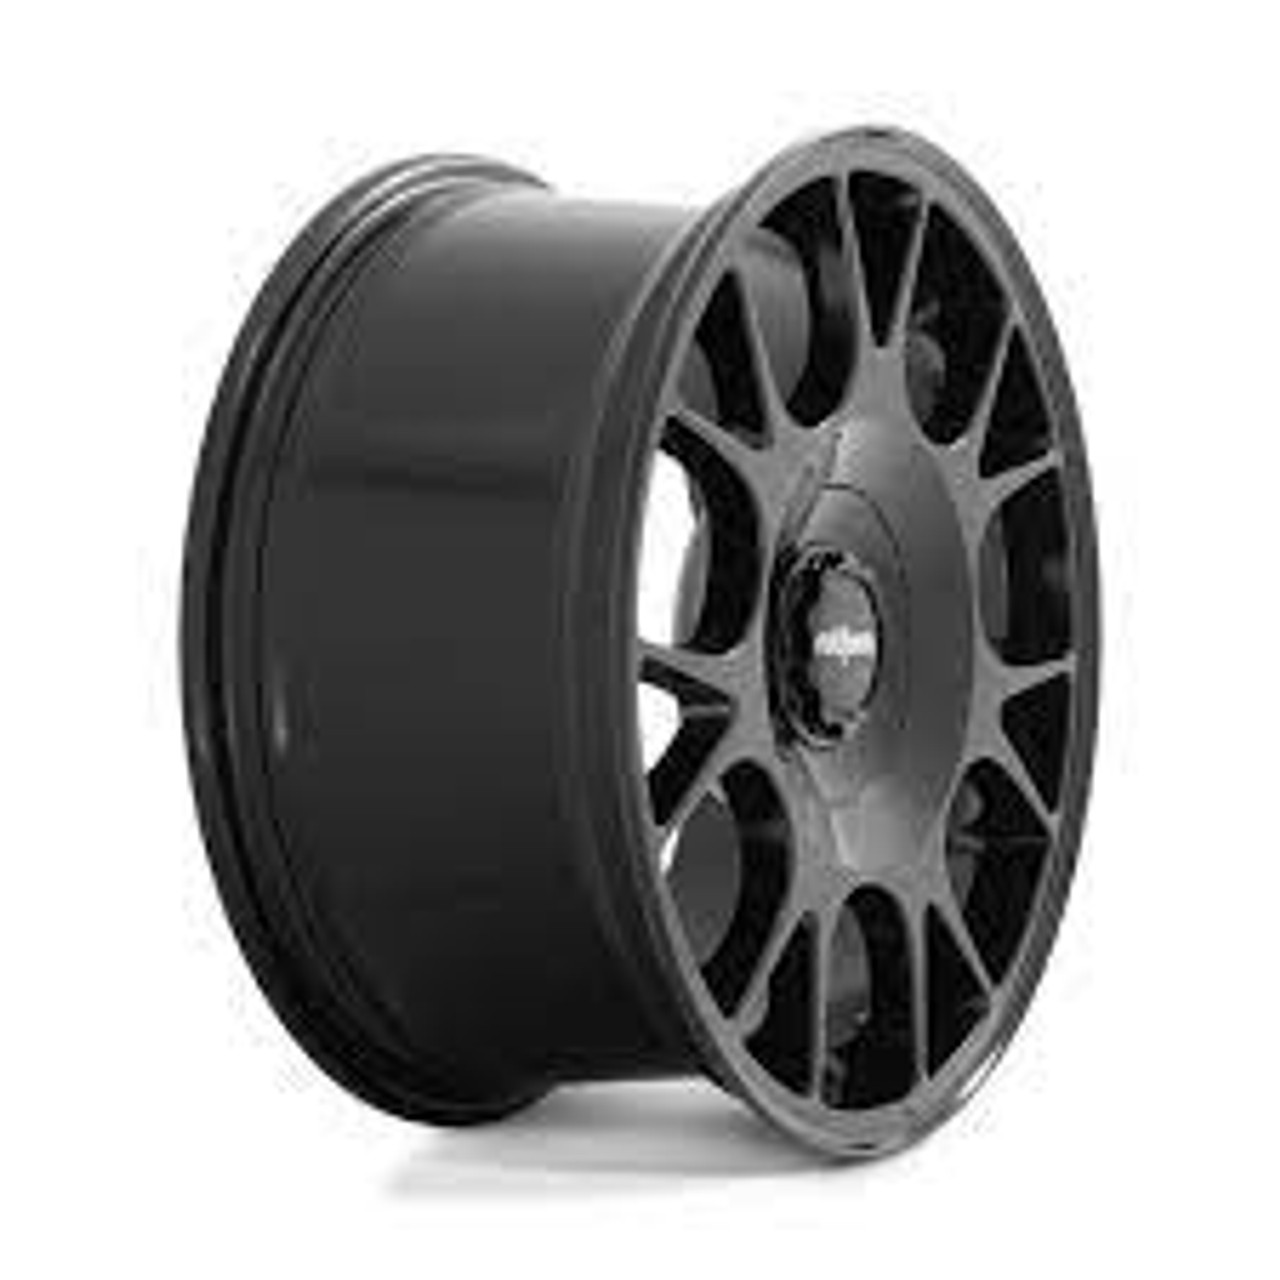 Rotiform R187 TUF-R Wheel 18x8.5 5x108/5x120 45 Offset - Gloss Black